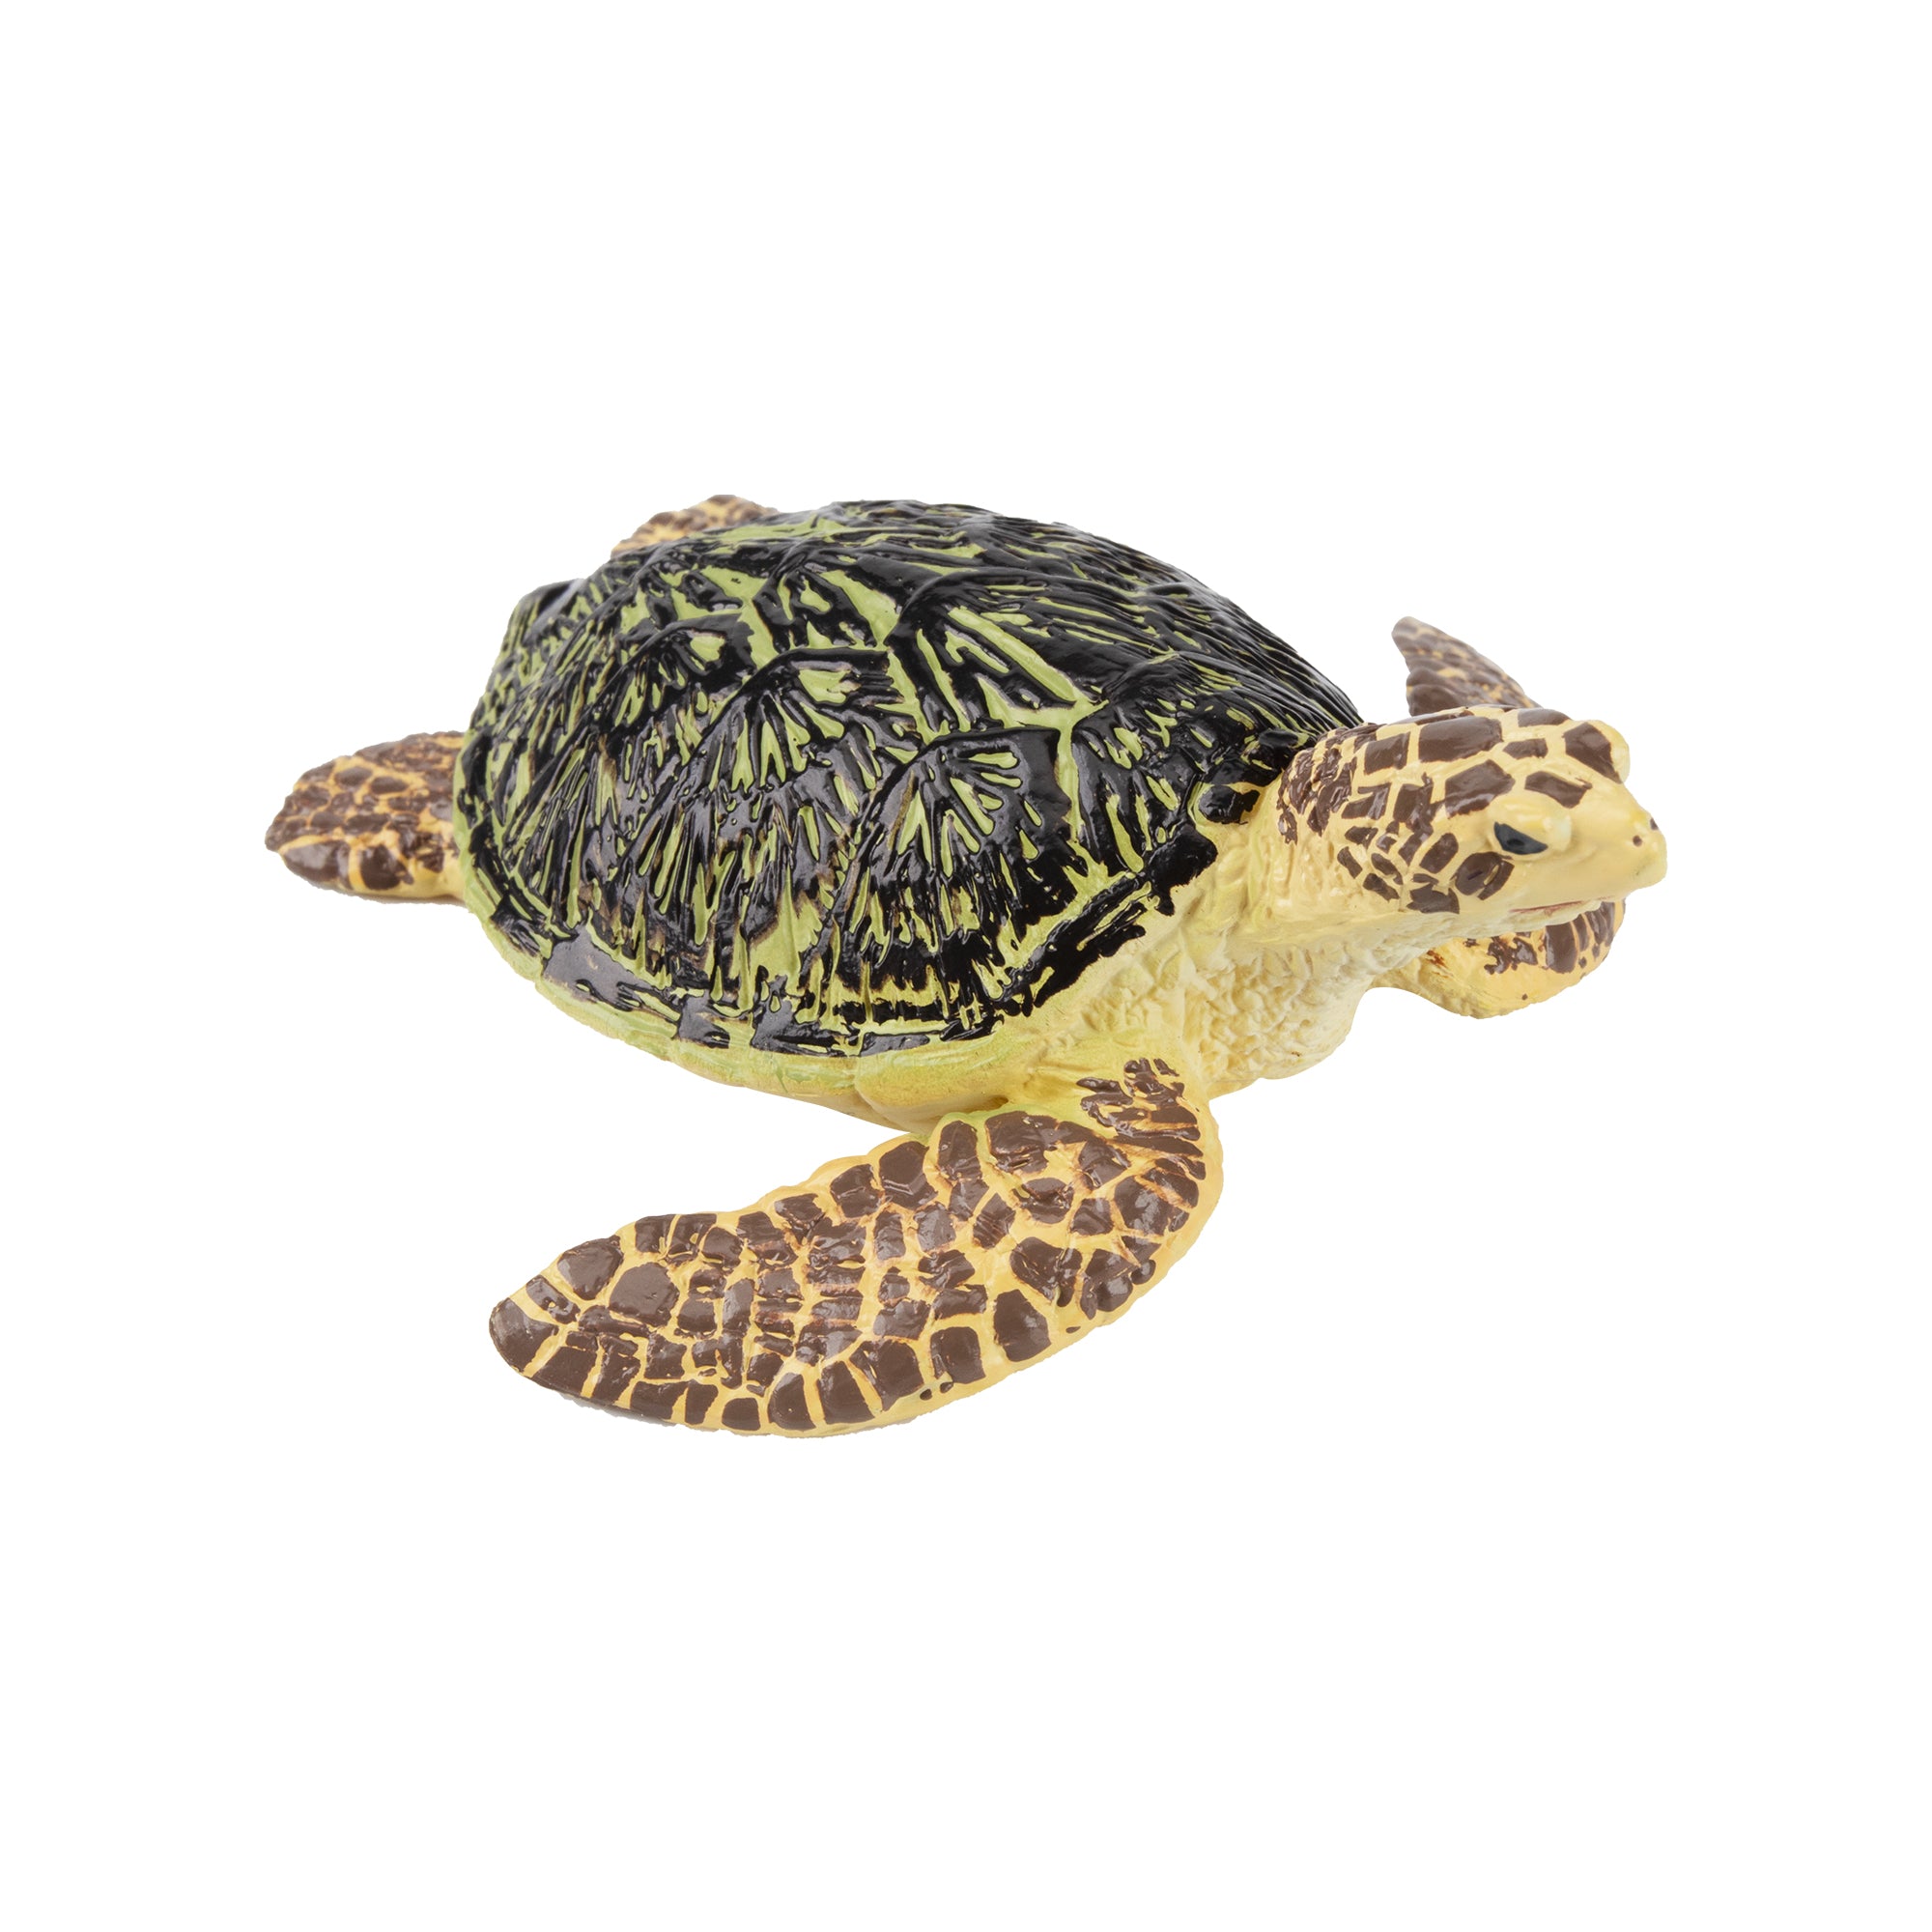 Toymany Loggerhead Sea Turtle Figurine Toy-2